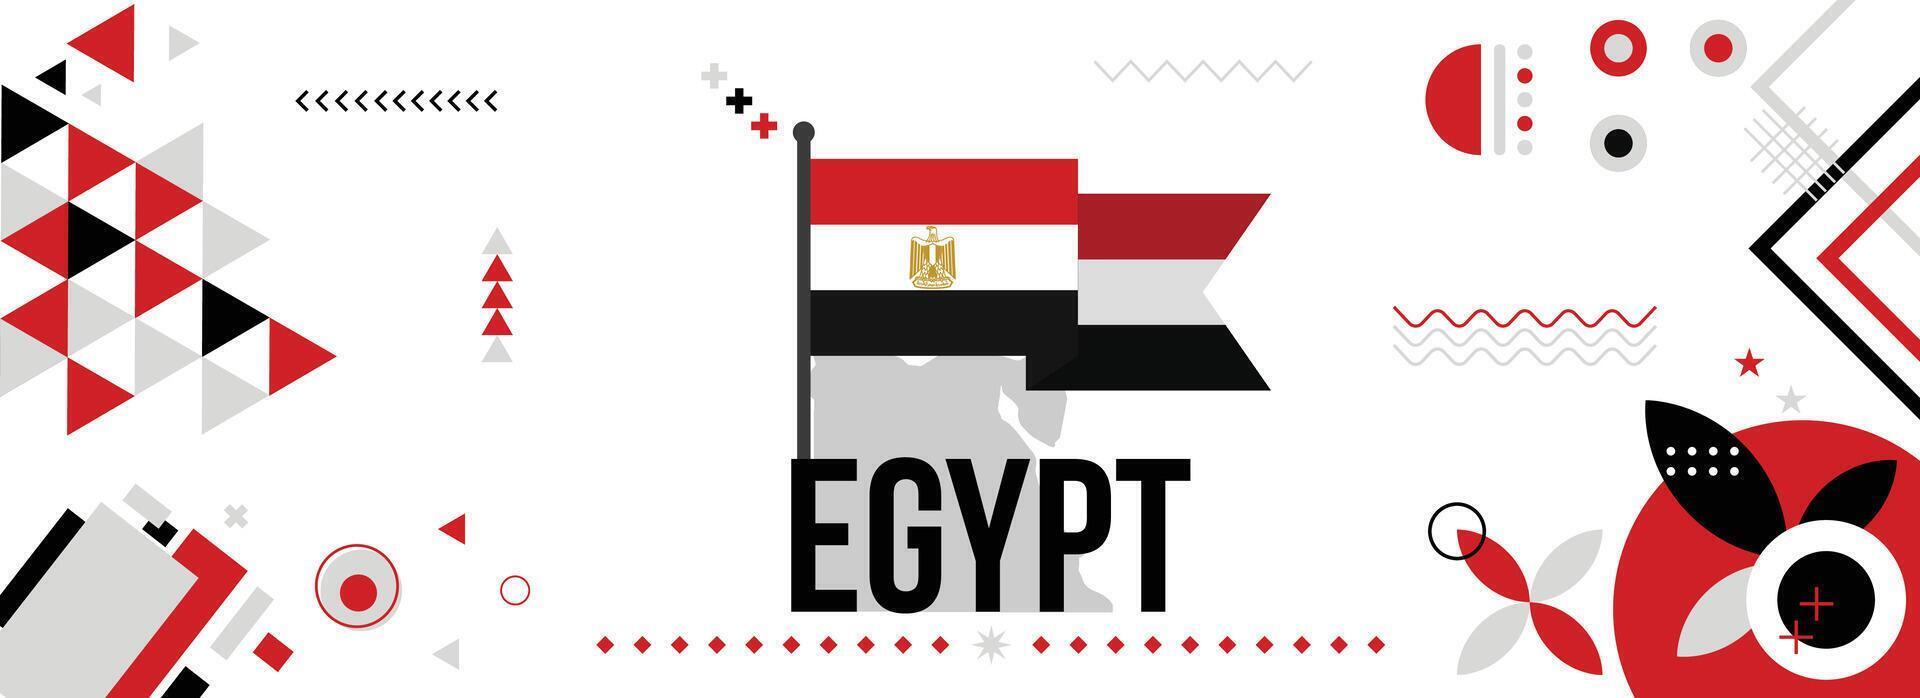 Egypte nationale ou indépendance journée bannière pour pays fête. drapeau et carte de Egypte avec élevé poings. moderne rétro conception avec typorgaphie abstrait géométrique Icônes. vecteur illustration.